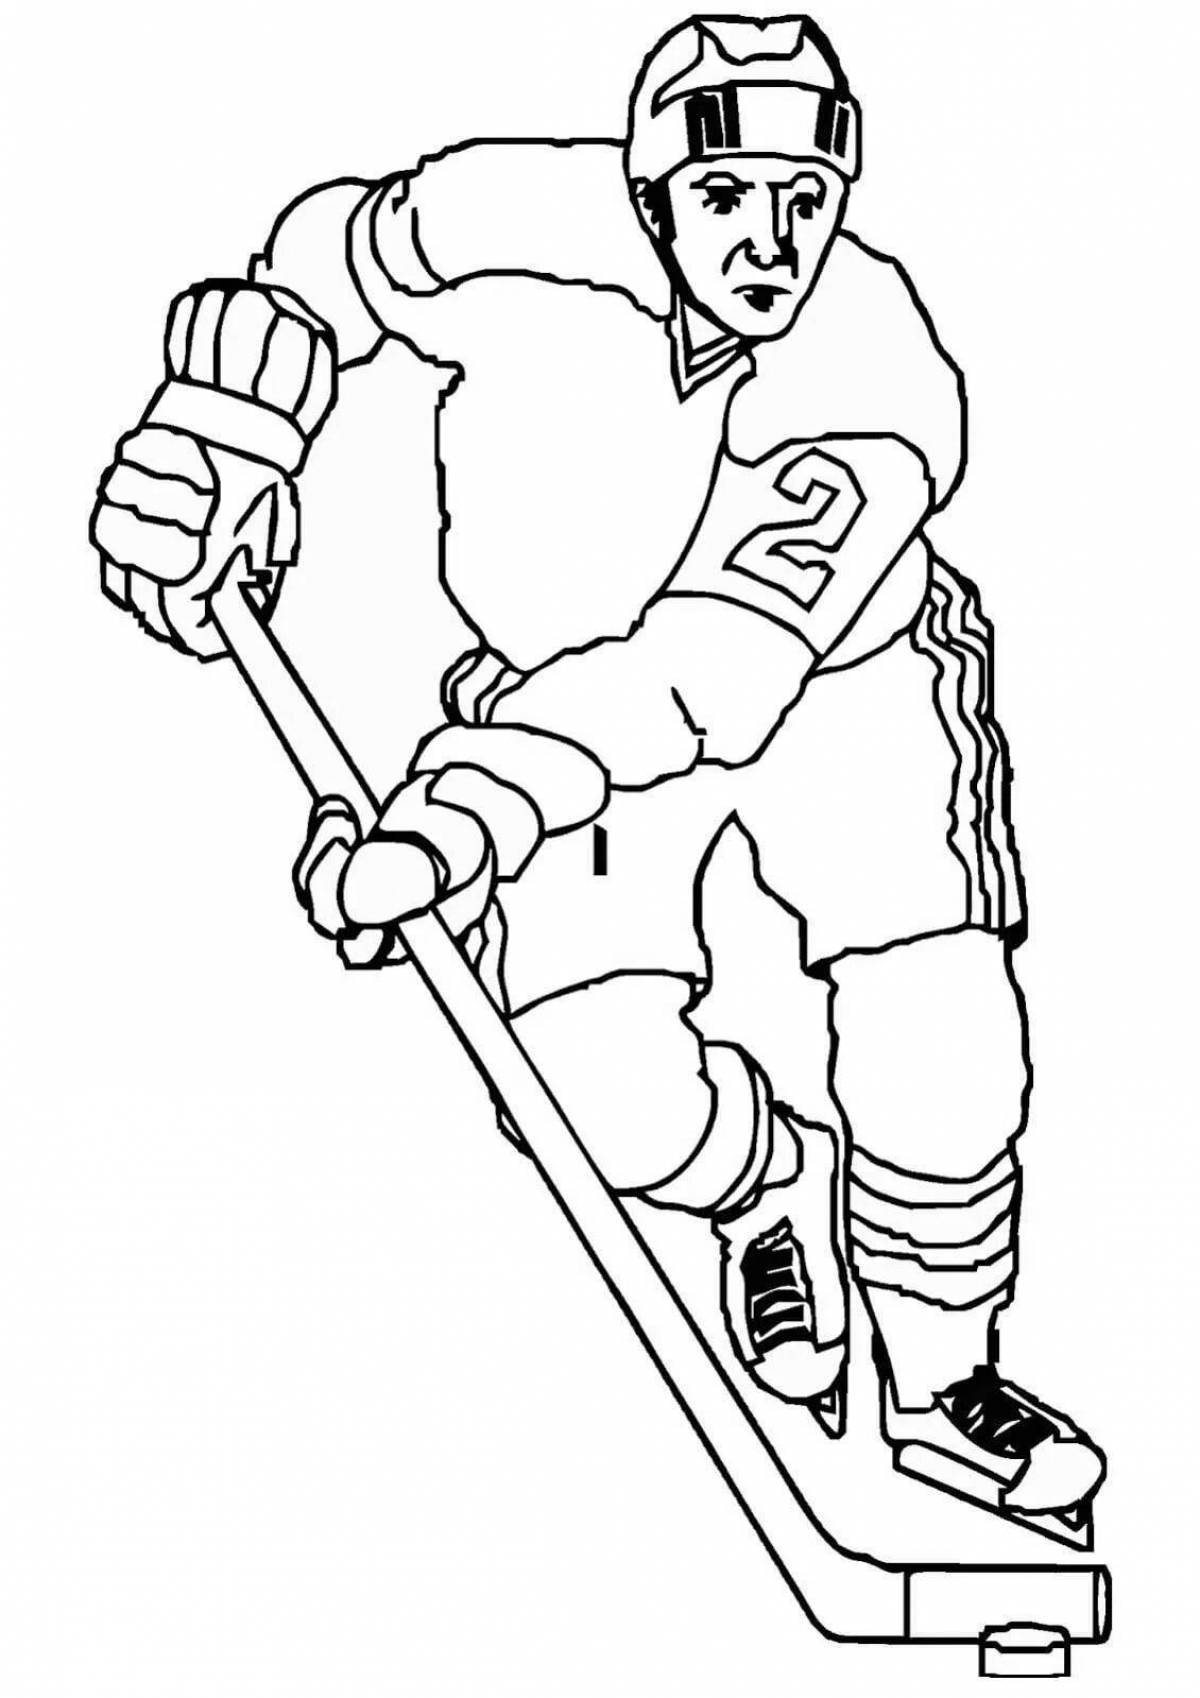 Hockey #4